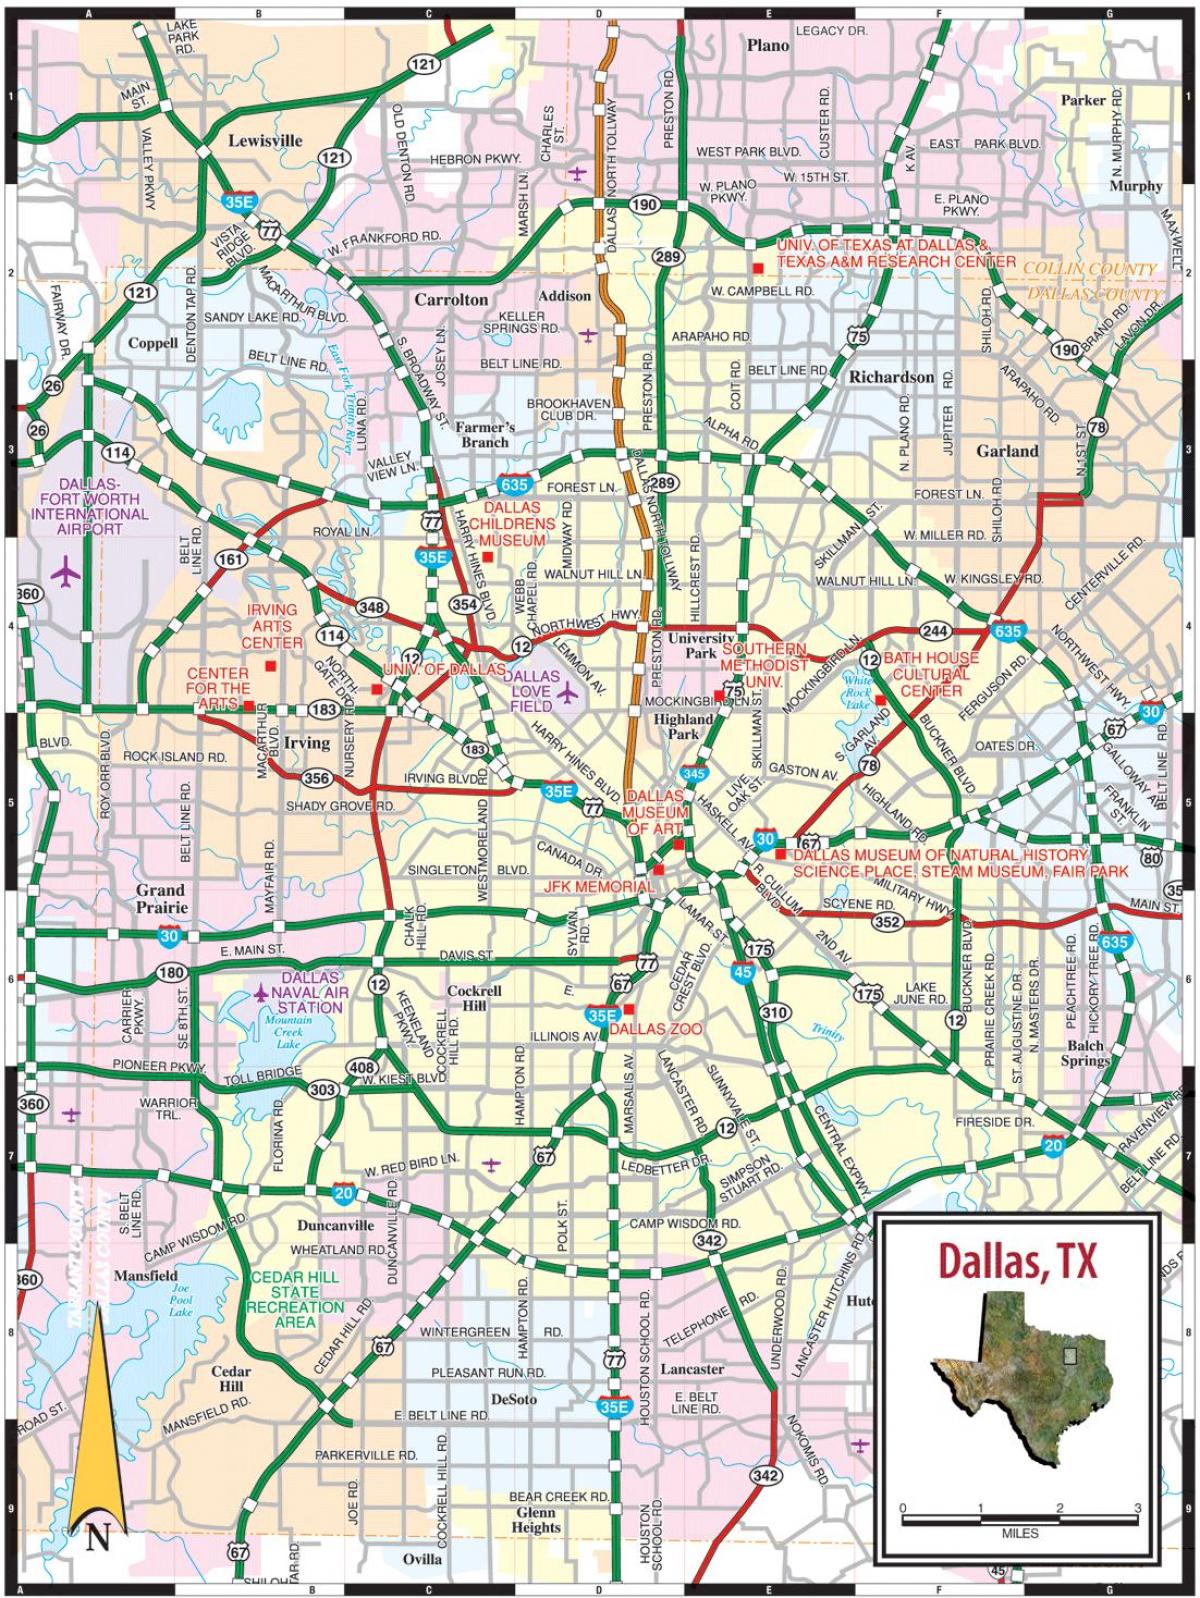 град Далас картата